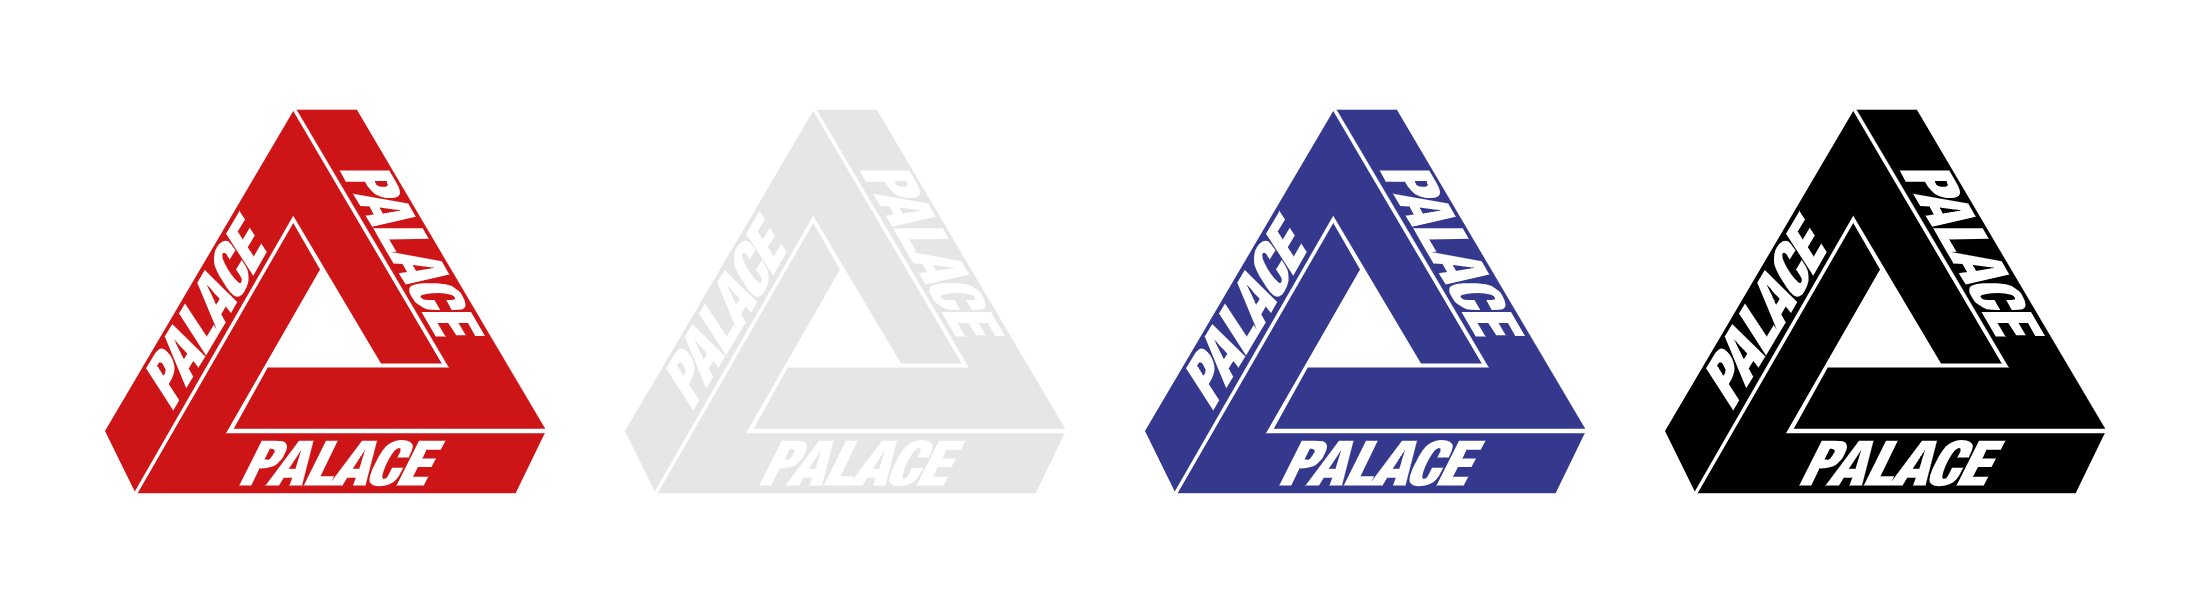 Palace Skateboards - by Nick Parker - Tone